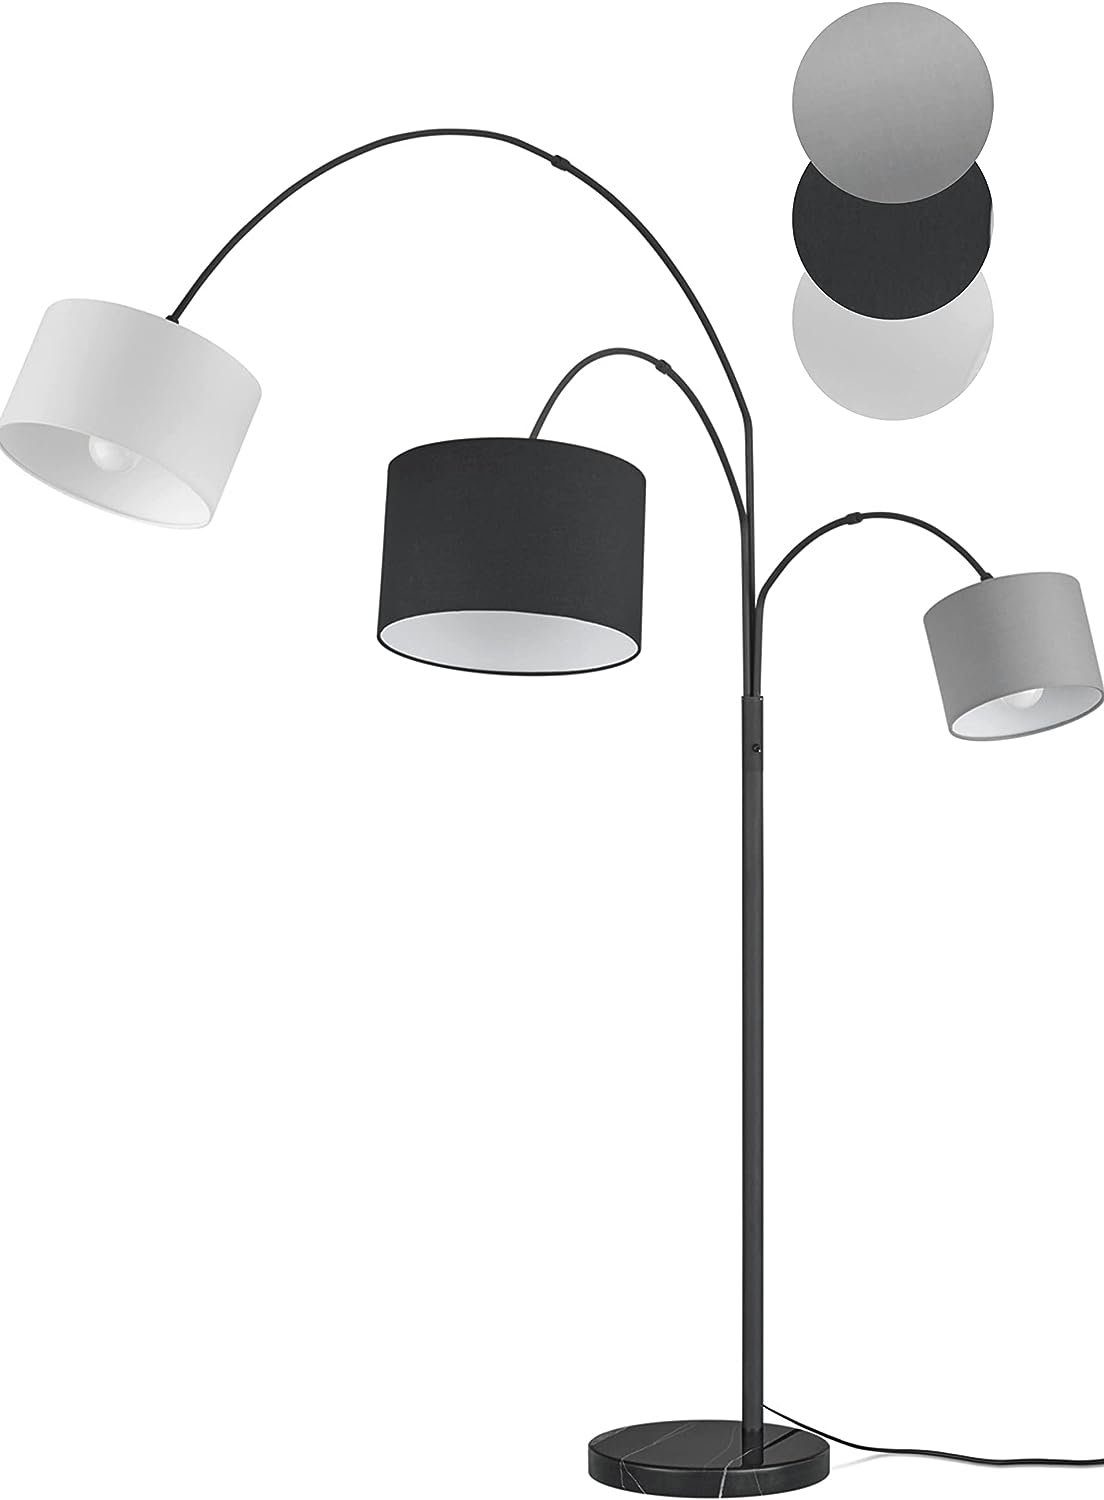 Stehlampe Claas, lightling Leuchtmittel, Stoffschirm, ohne Design